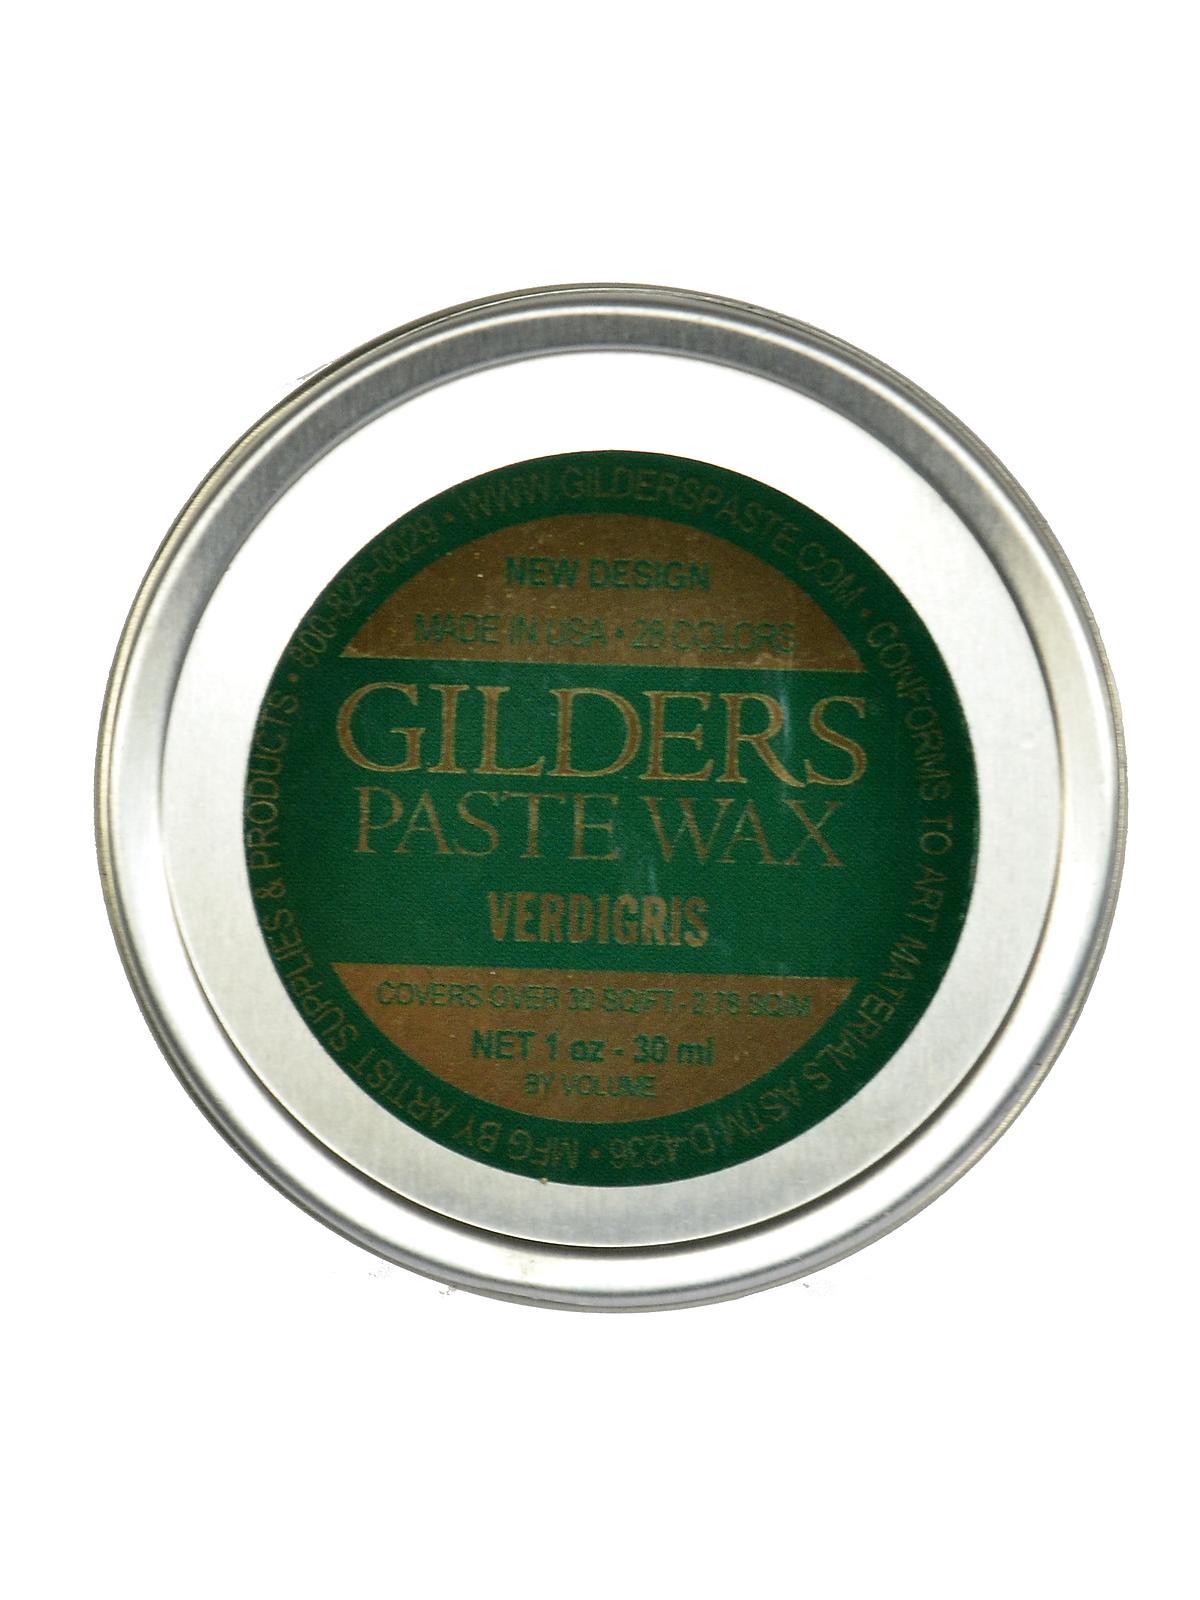 Gilder's Paste Wax Verdigris 1 Oz. Tin